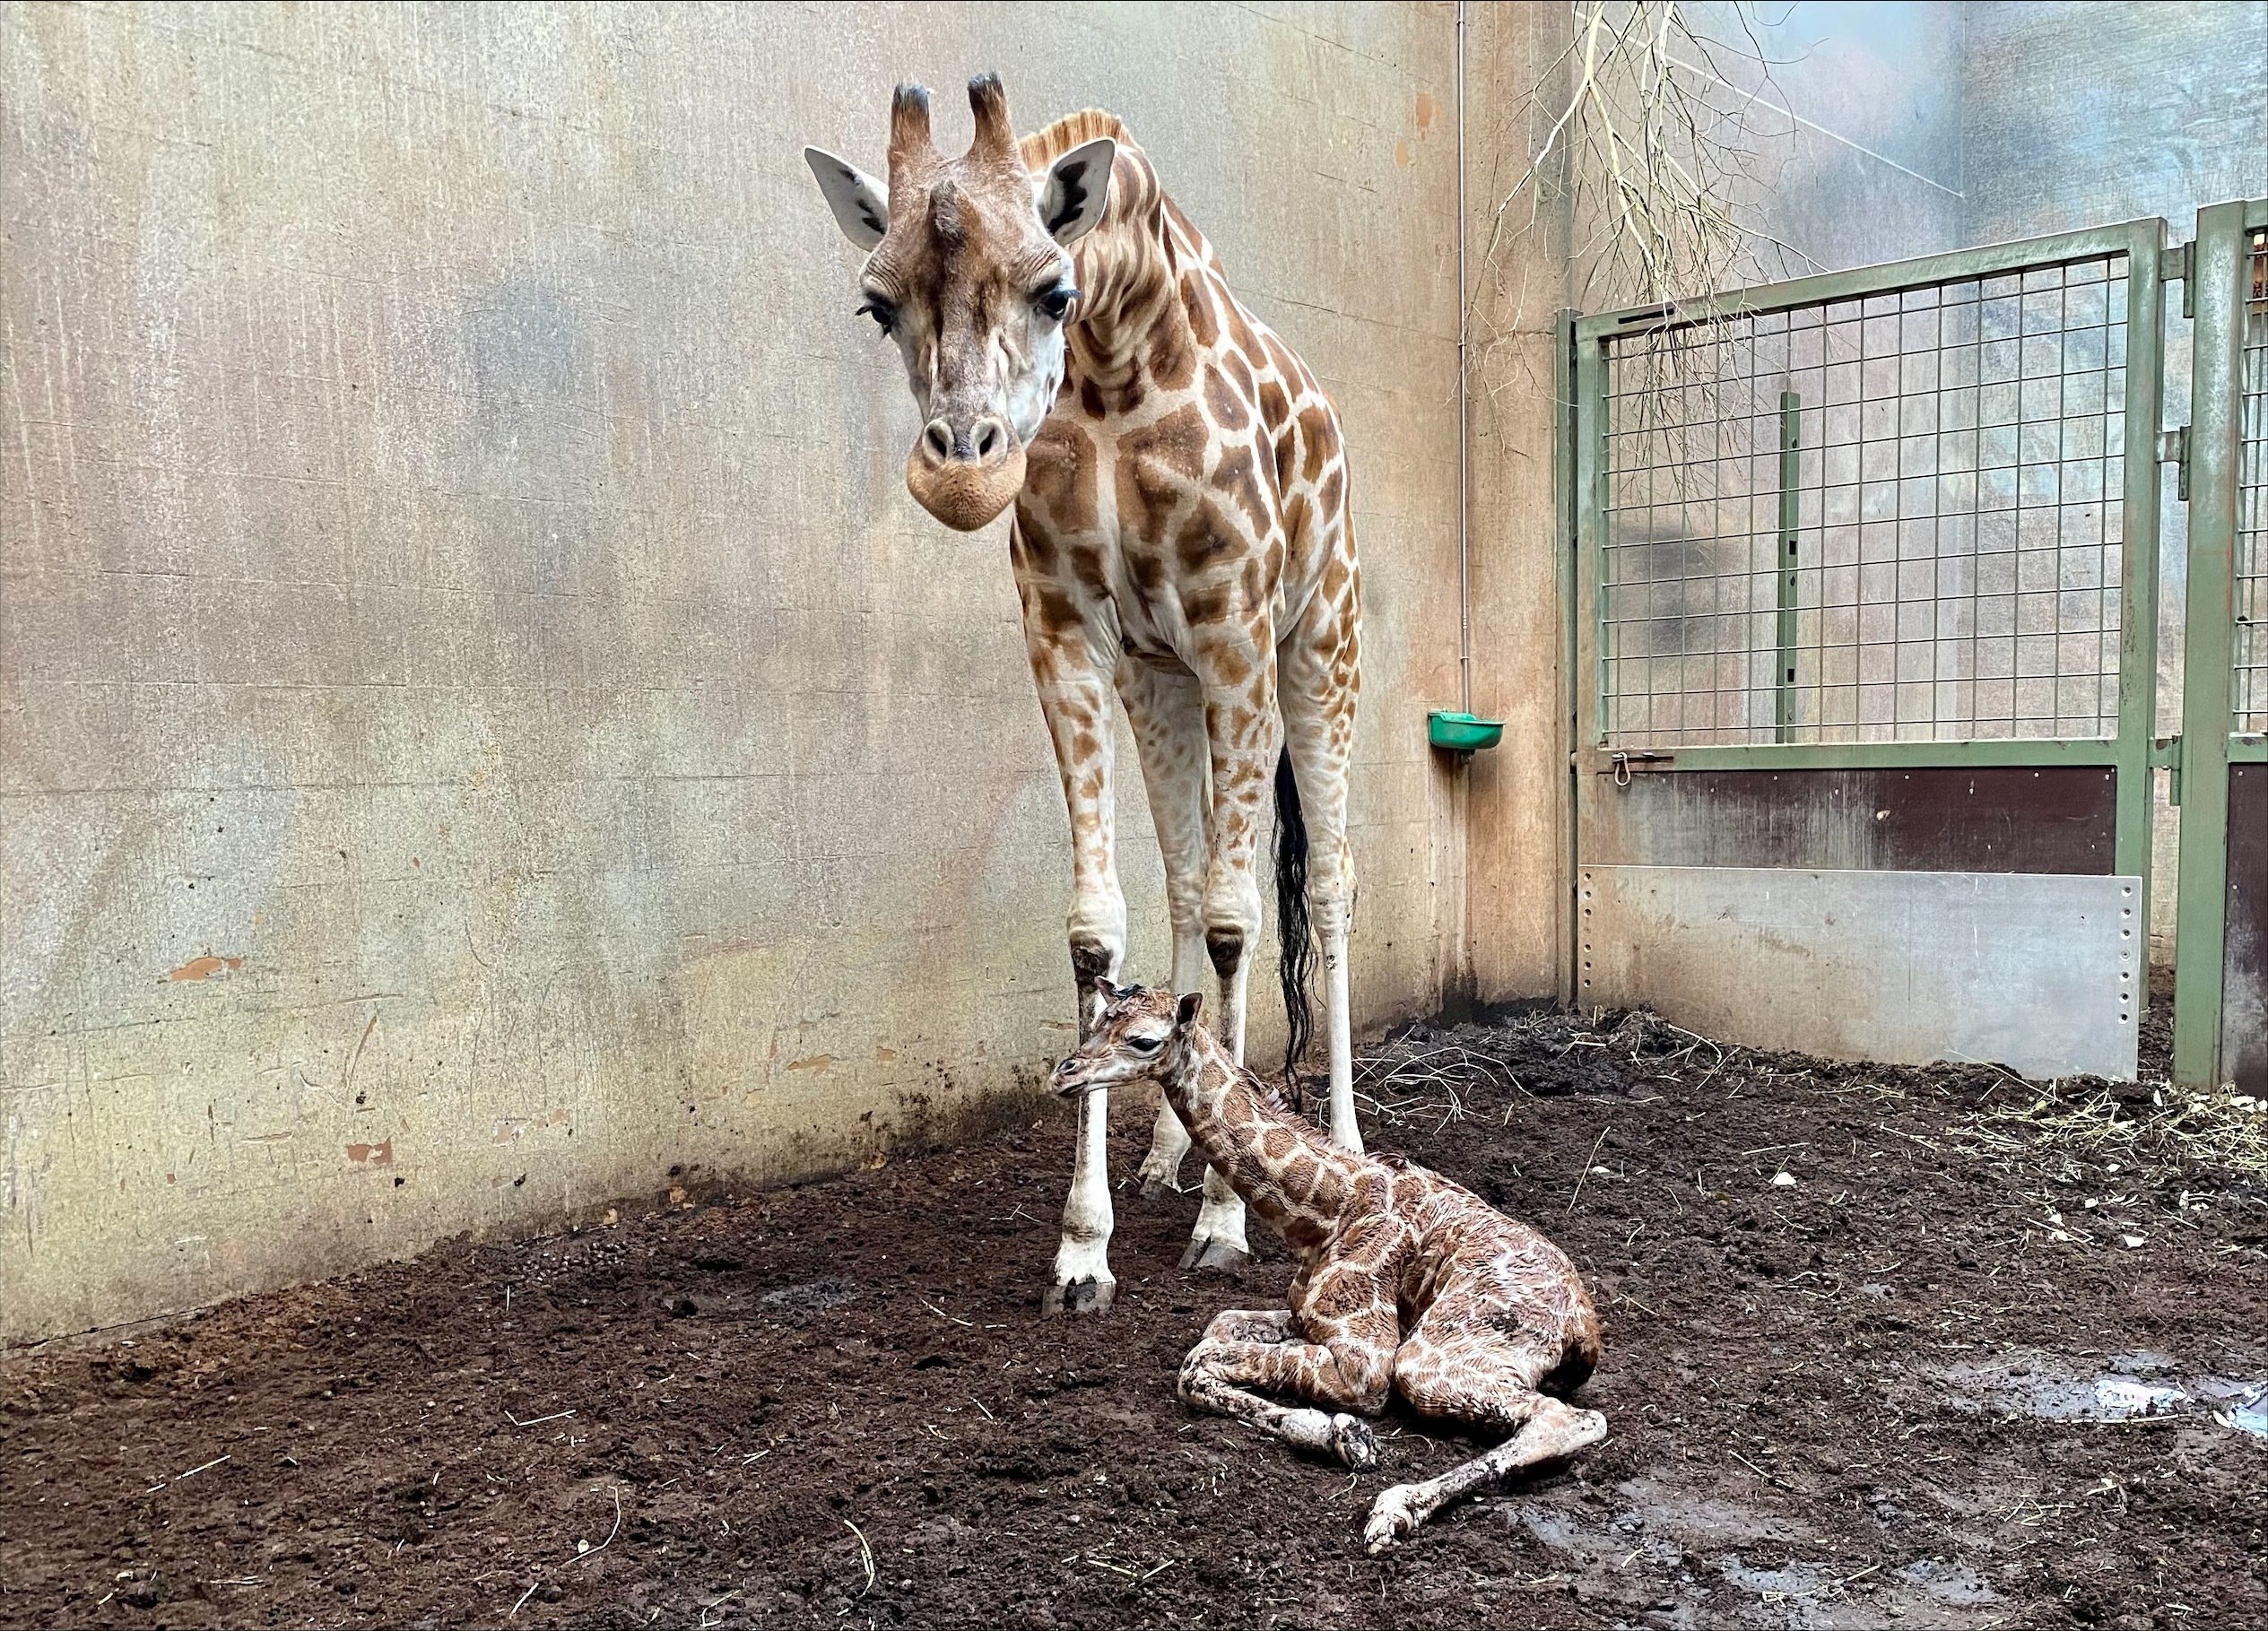 Så nuttet er den: Zoo har fået en lille ny giraf